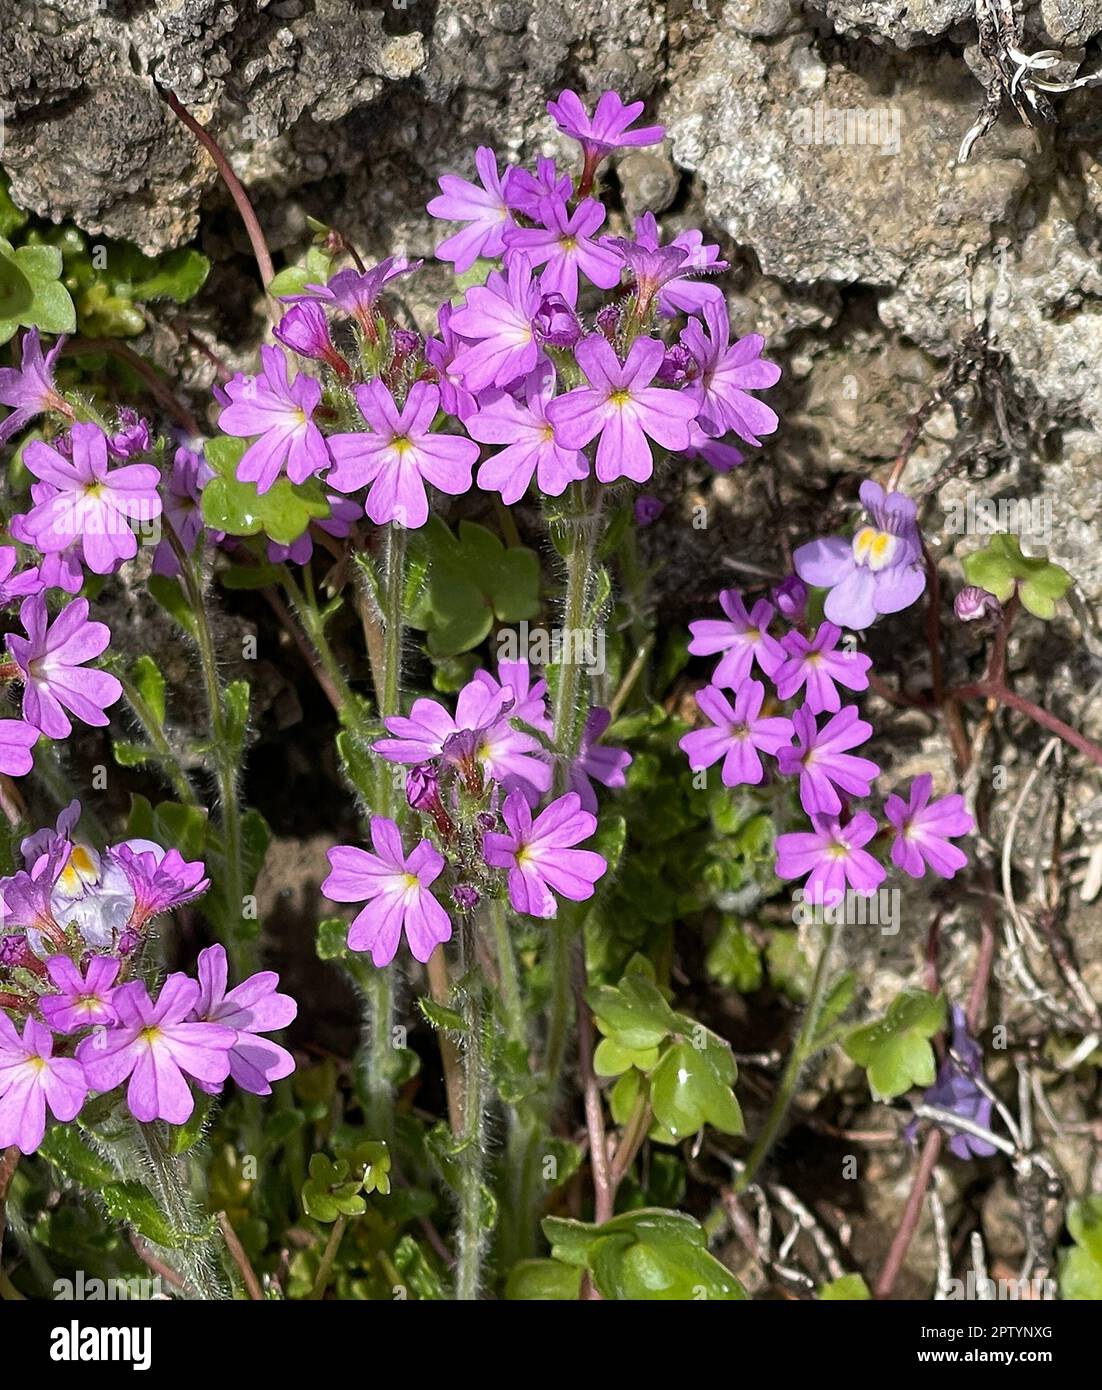 Alpenbalsam, Erinus alpinus ist eine langbluehende Steingartenstaude mit zierlichen Lippenblueten zwischen mai und August. Balsam alpino, Erinus alpin Foto Stock